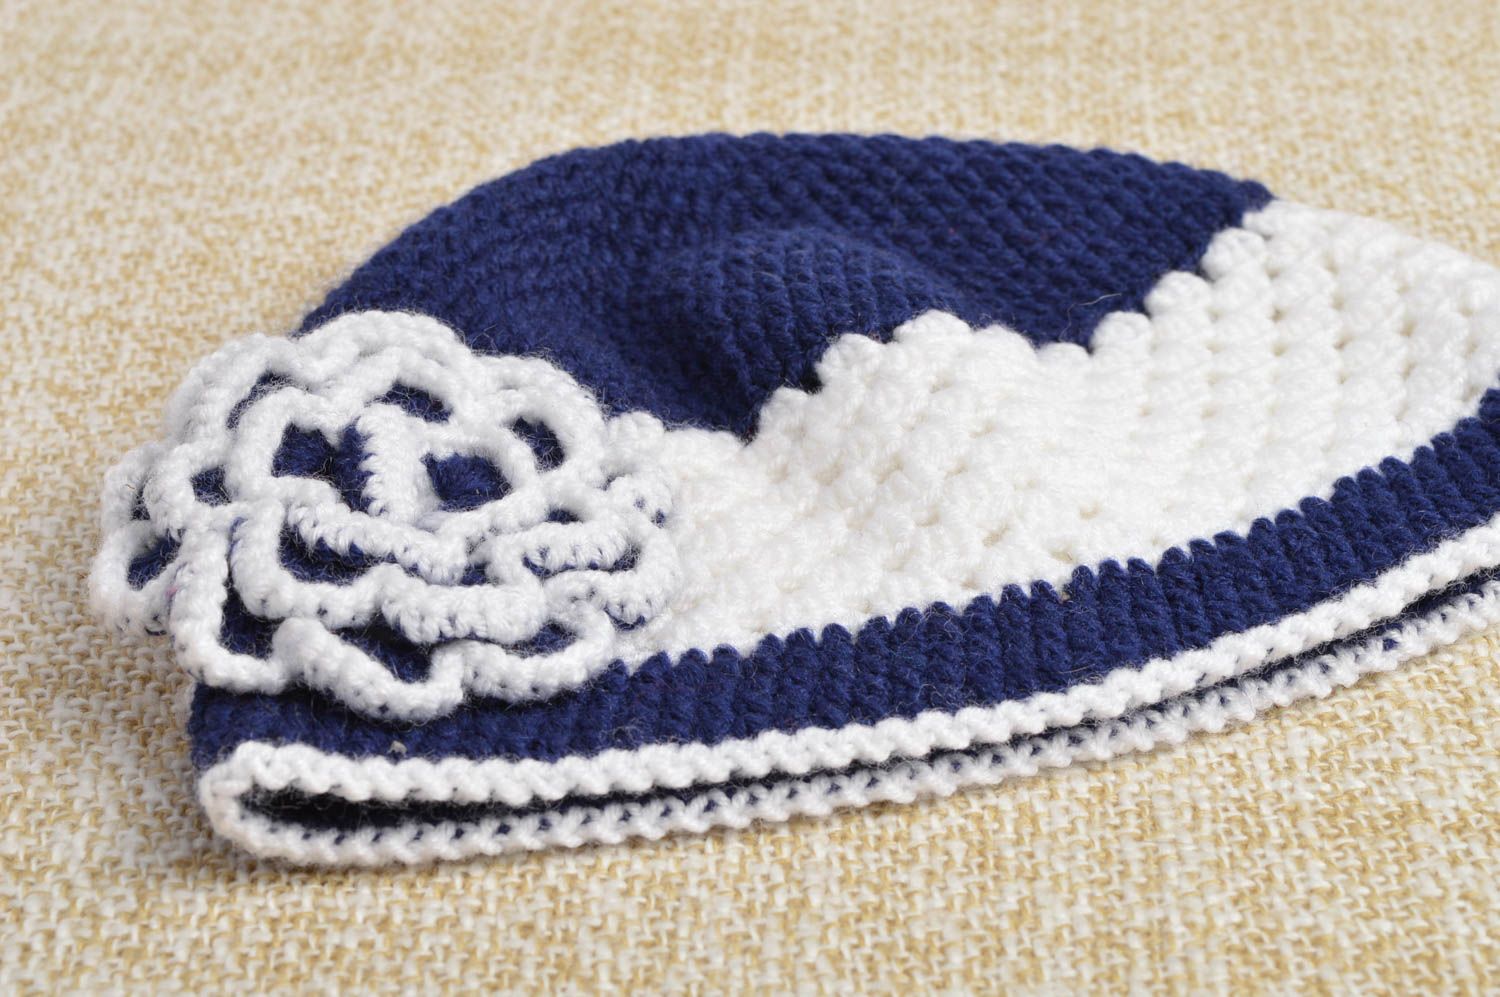 Blue crocheted cap handmade woolen caps for girls cute children accessory photo 1